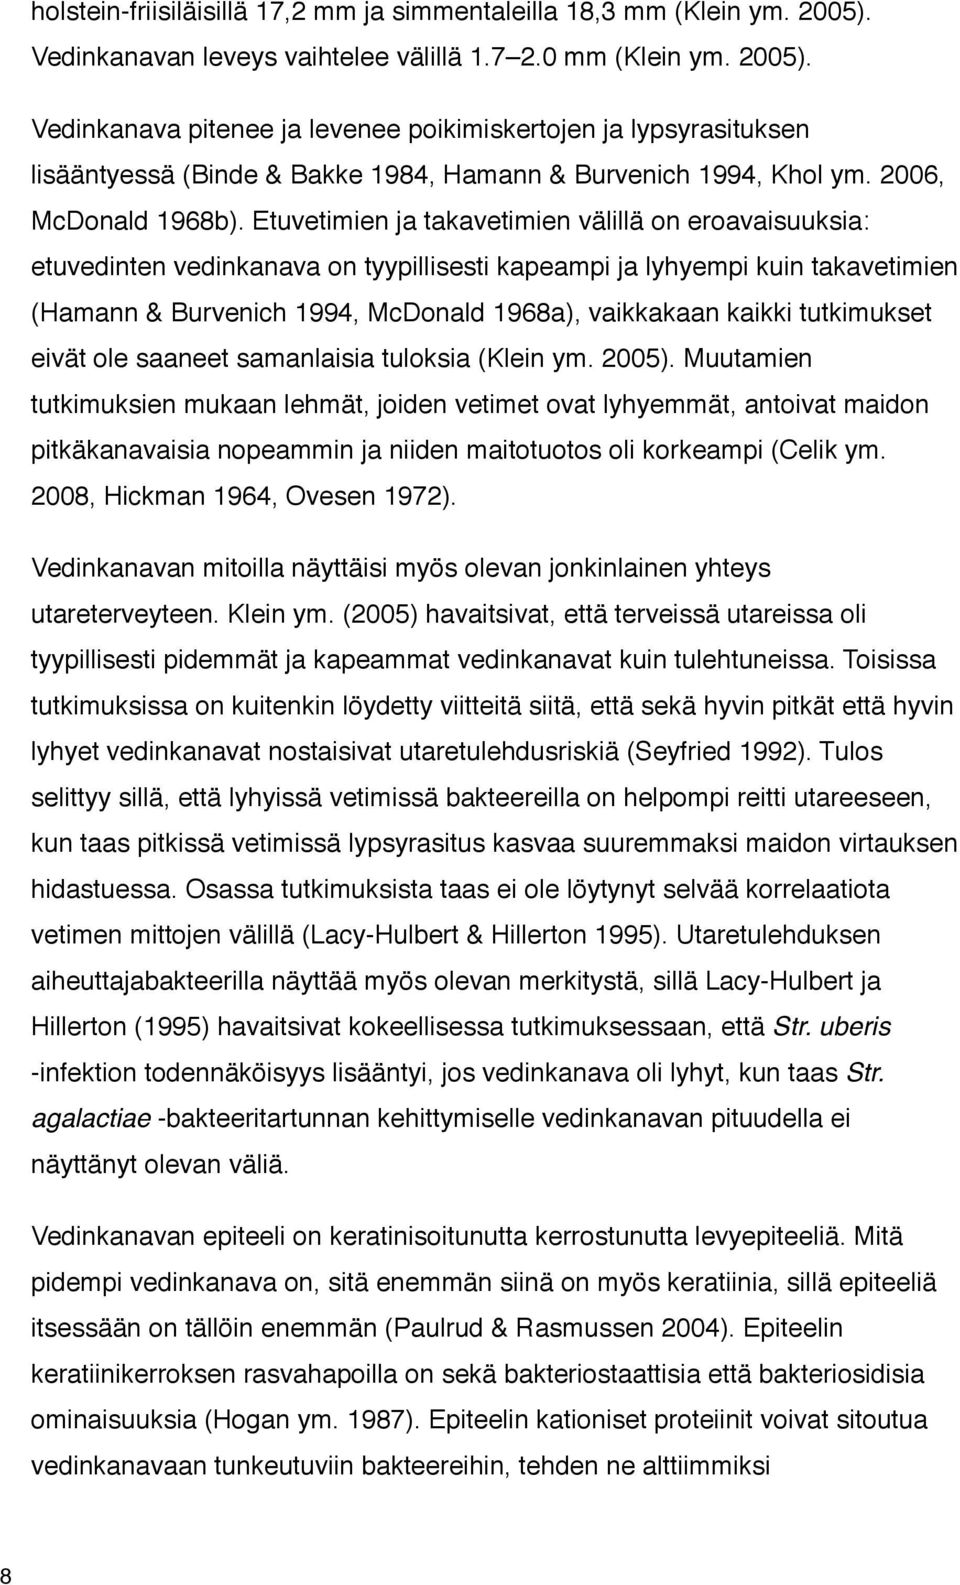 Vedinkanava pitenee ja levenee poikimiskertojen ja lypsyrasituksen lisääntyessä (Binde & Bakke 1984, Hamann & Burvenich 1994, Khol ym. 2006, McDonald 1968b).